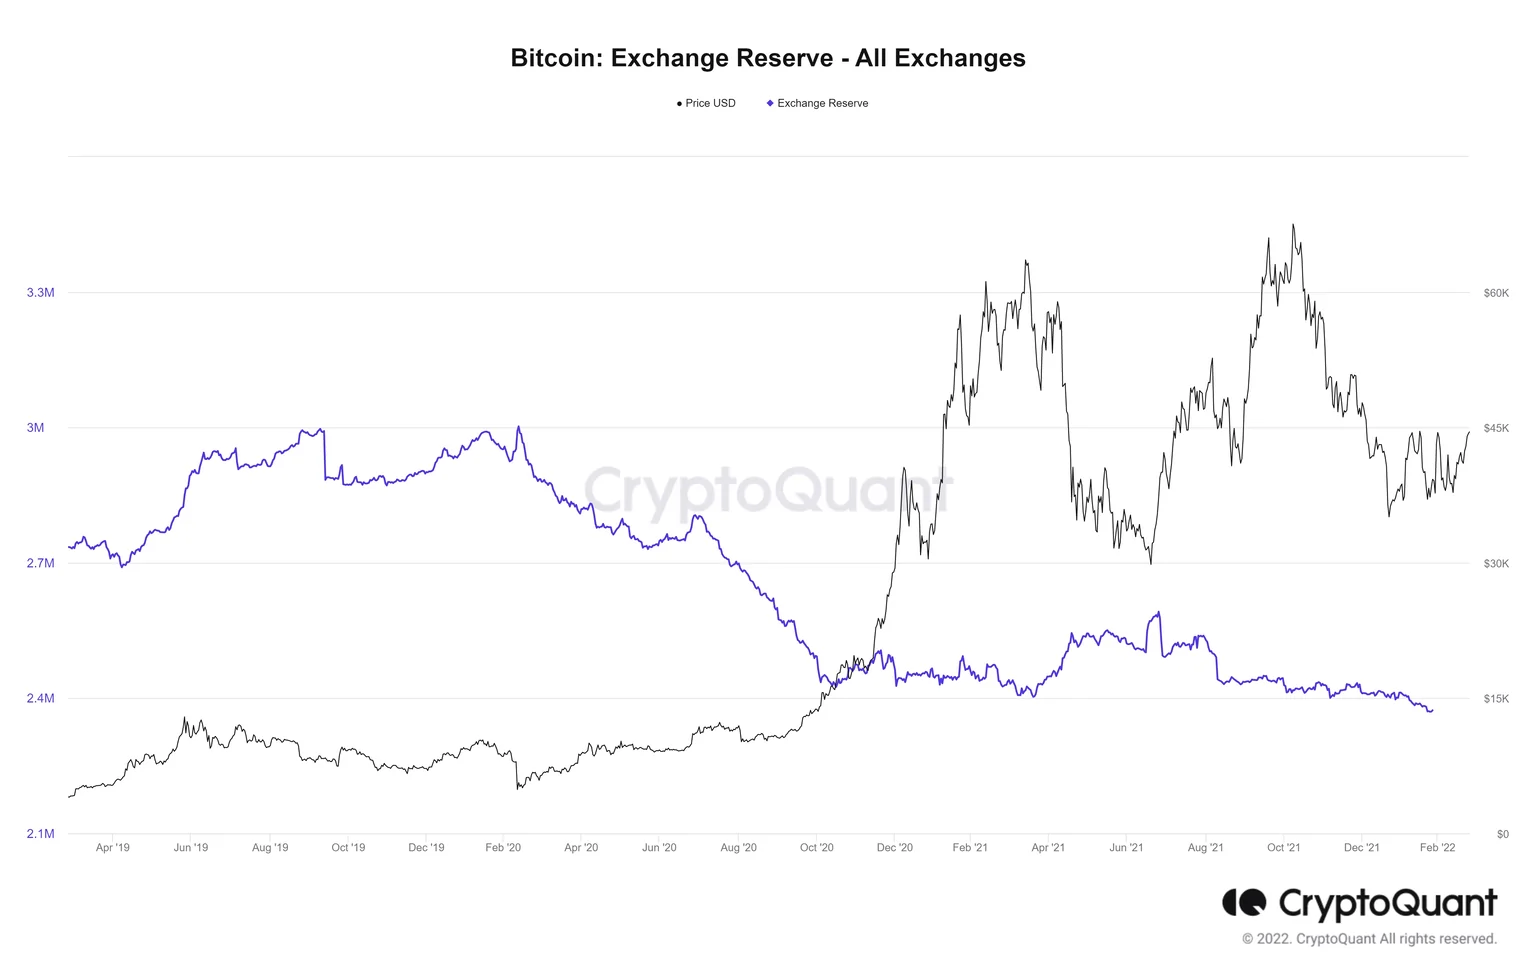 Reservas de Bitcoin en Exchanges - Sumatoria General